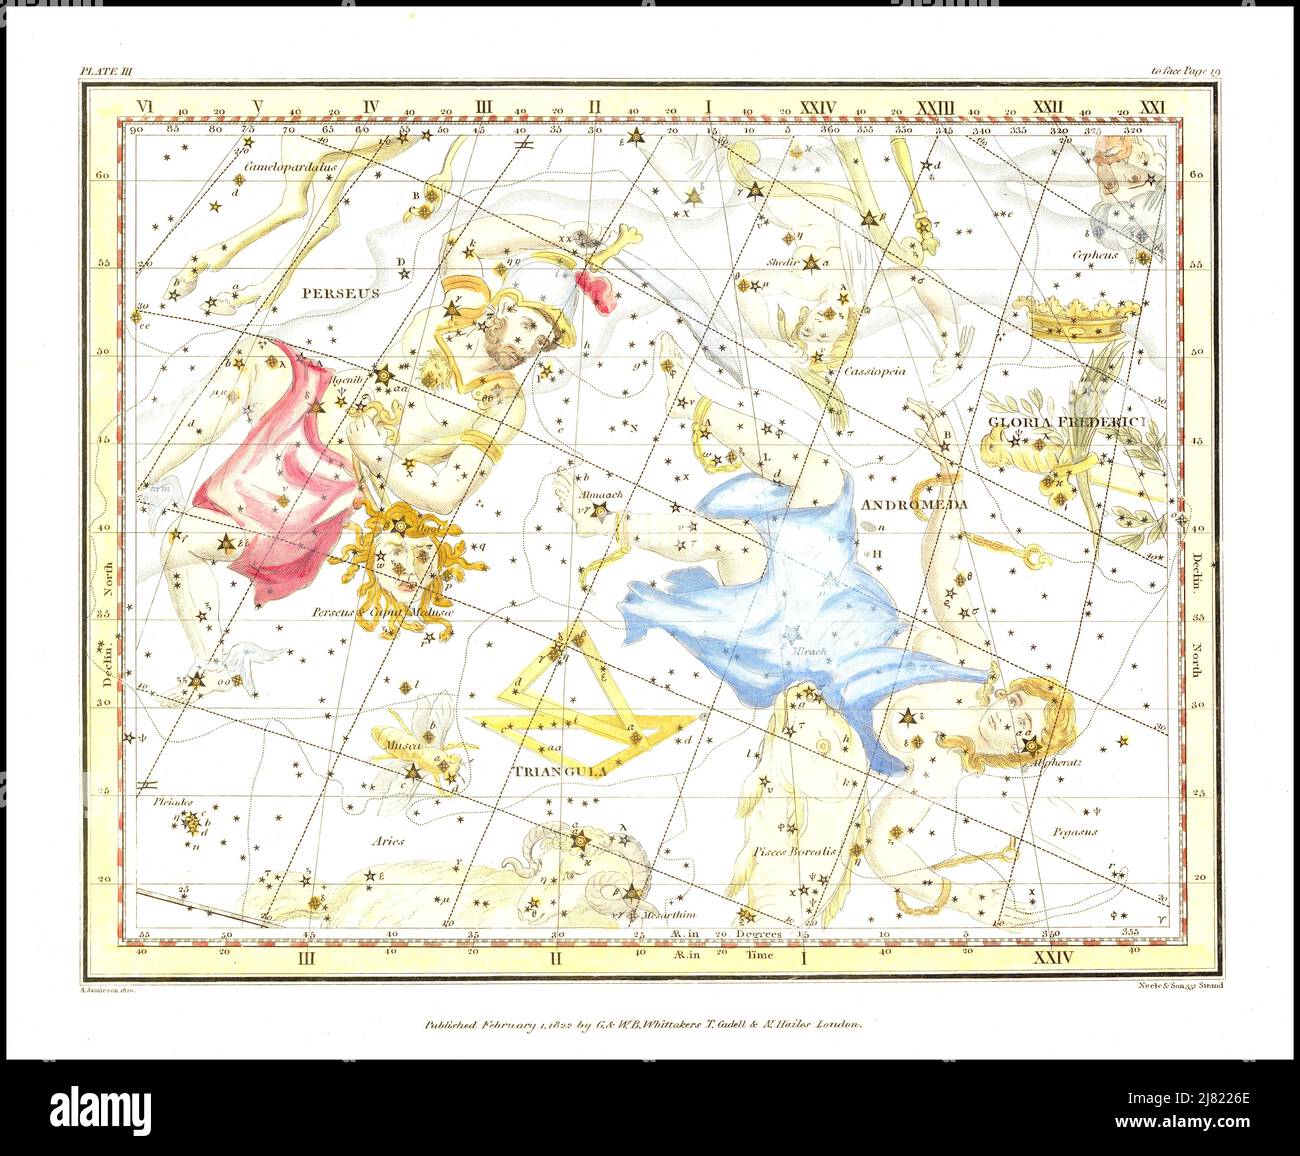 Alexander Jamieson - Andromeda, Perseus & Caput medusae - planche 3 d'Un atlas céleste comprenant une exposition systématique des cieux - 1822 Banque D'Images